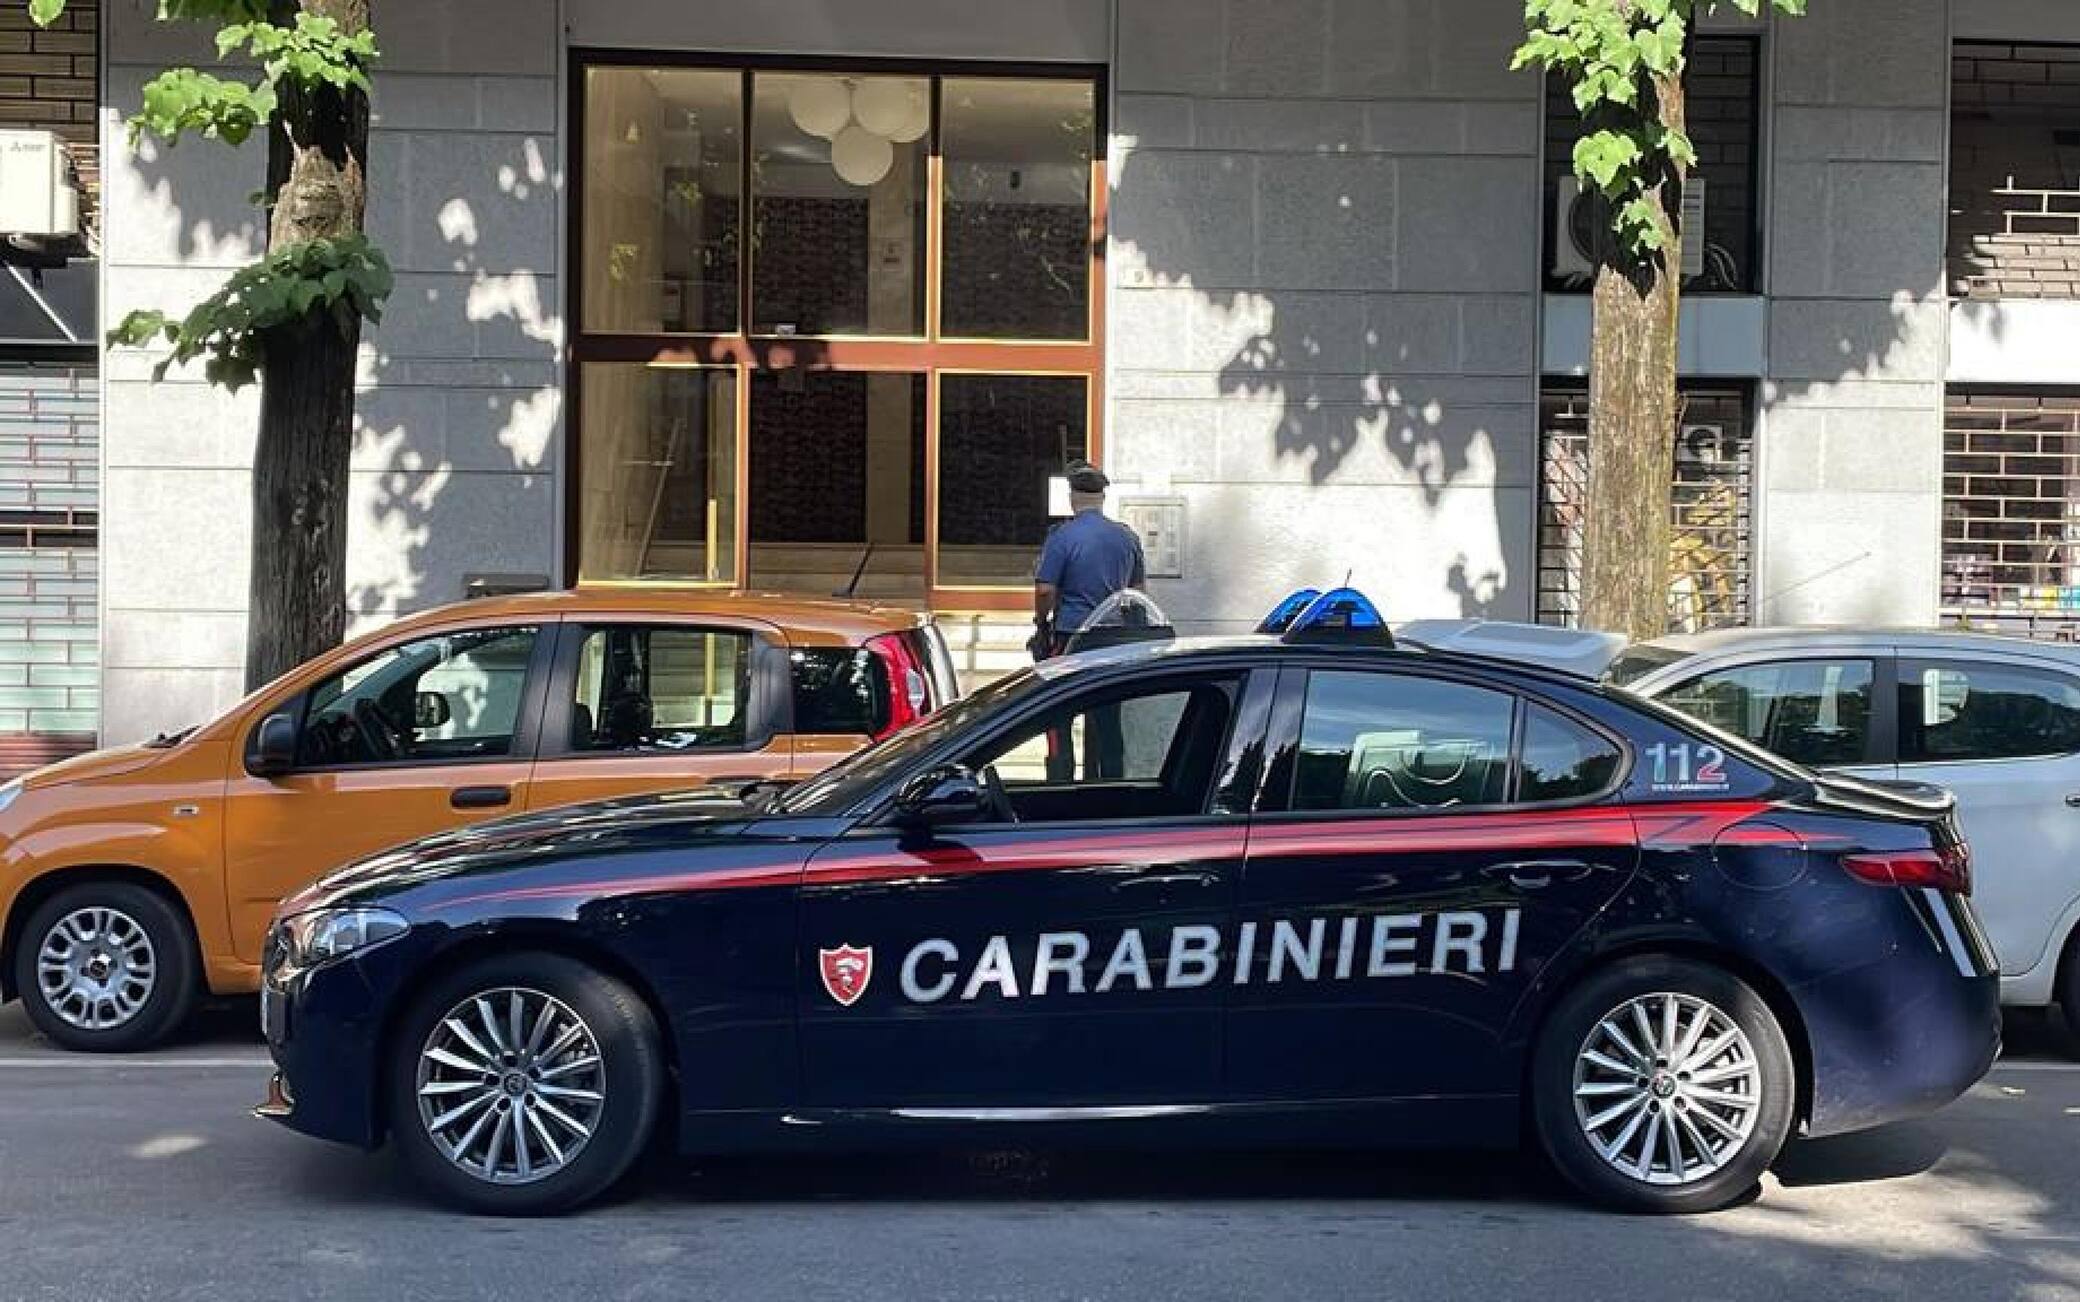 Un ragazzo di 19 anni ha ucciso il padre, 57 anni, con cui viveva a Sesto San Giovanni alle porte di Milano, 12 giugno 2022. Sul posto stanno intervenendo i carabinieri del SIS e il medico legale. A chiamare il 112 è stato lo stesso ragazzo.
ANSA/CARABINIERI